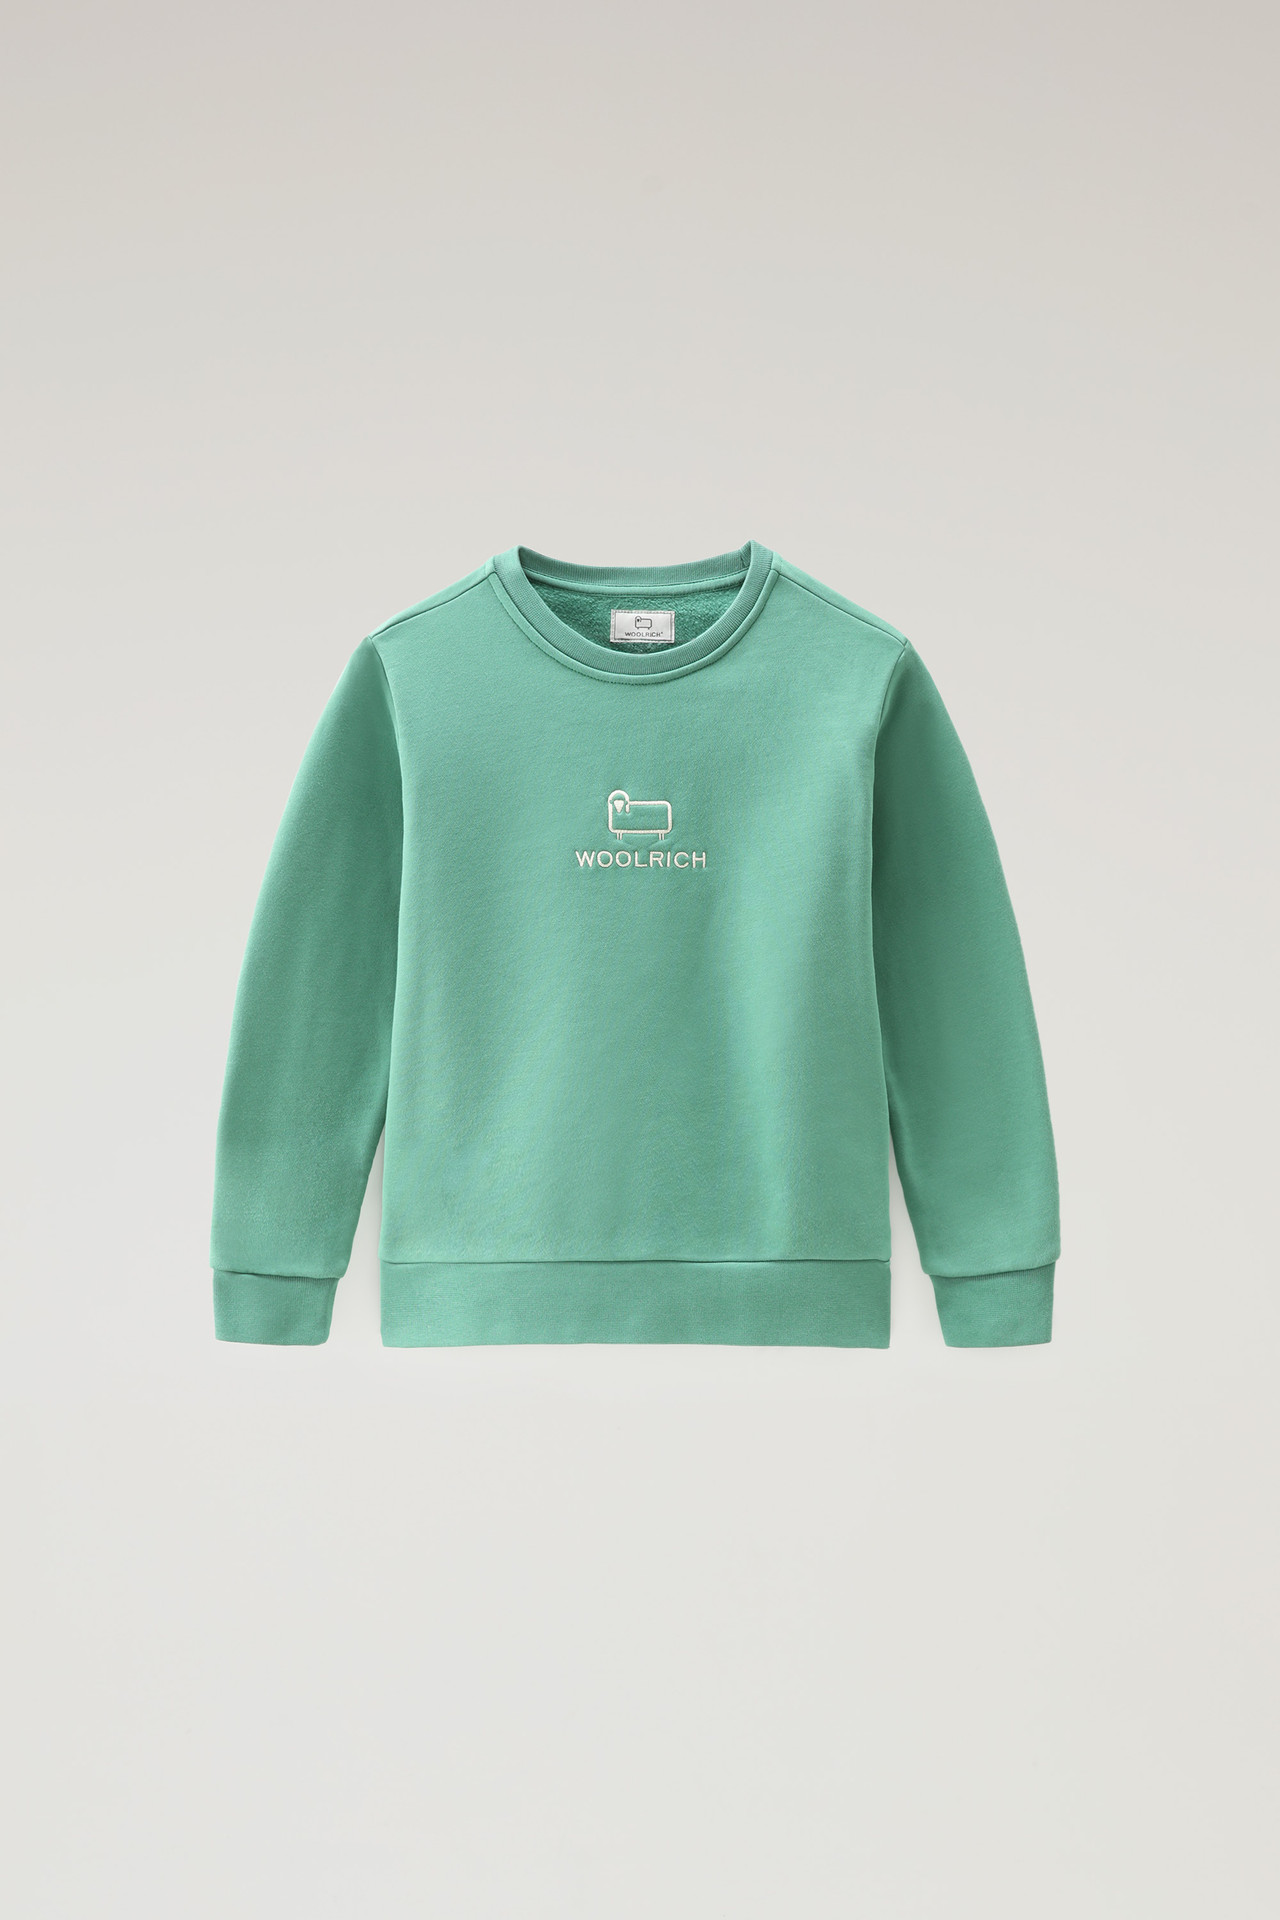 Woolrich Kids – Sweatshirt Logo – Groen